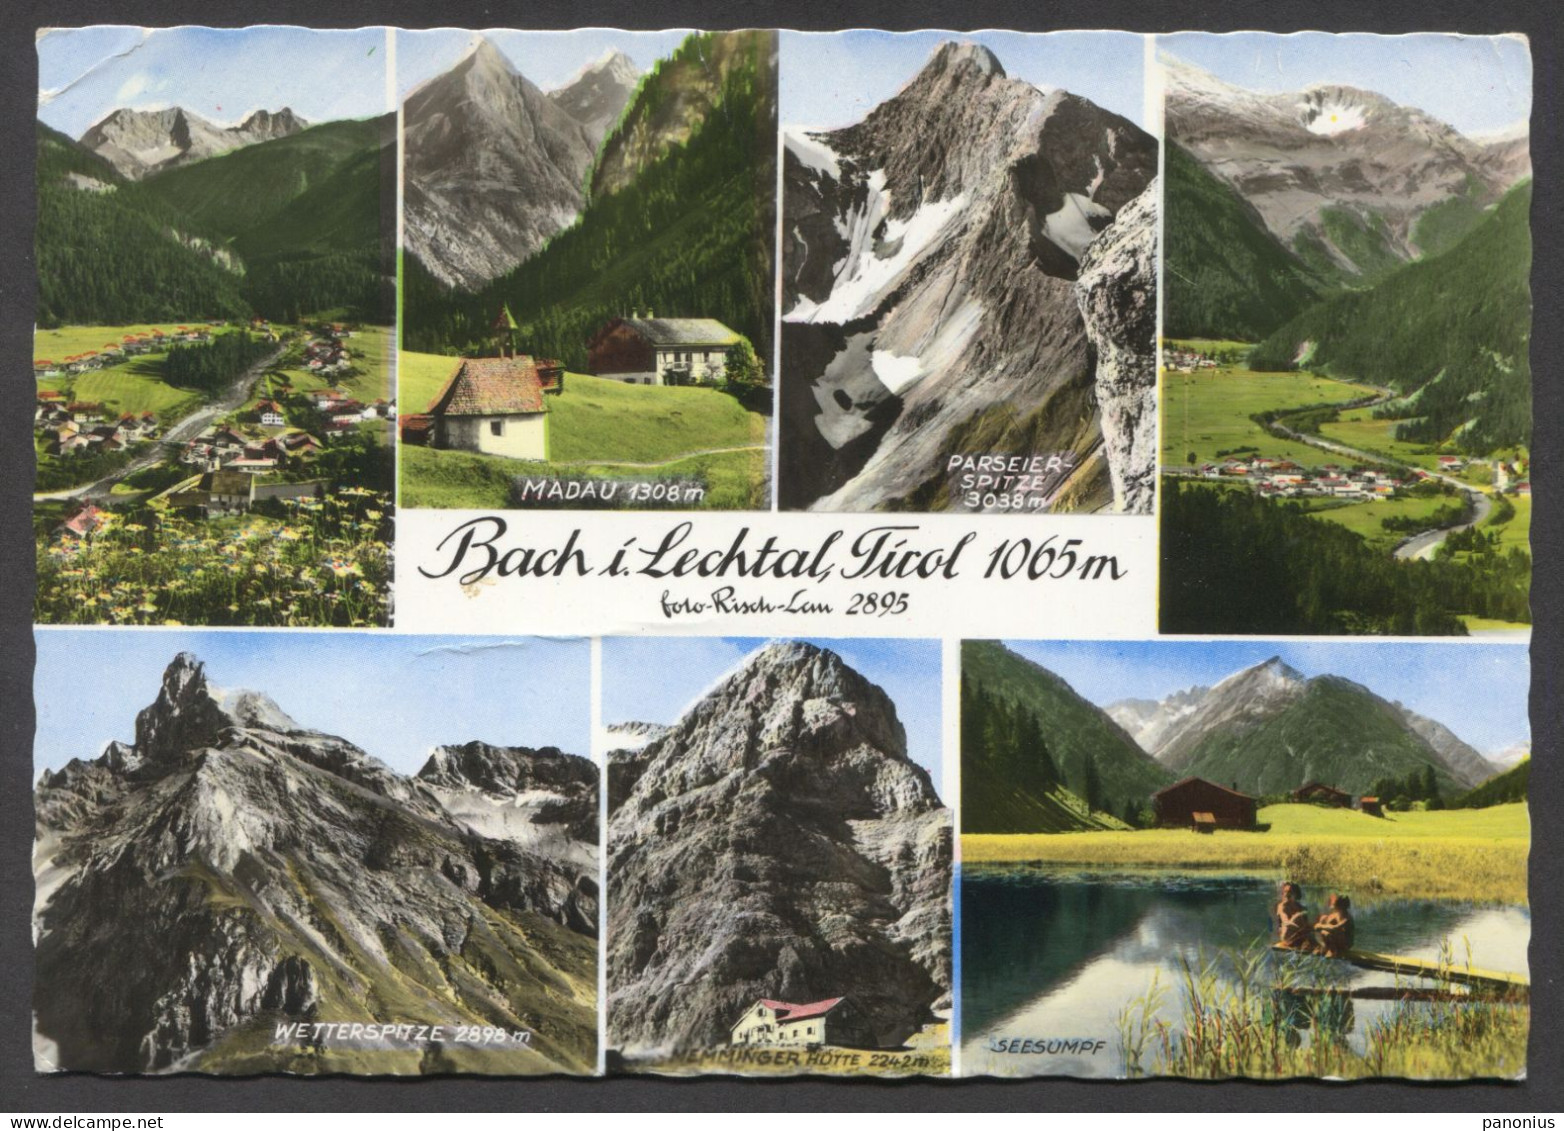 BACH I. LECHTAL TIROL AUSTRIA - Lechtal